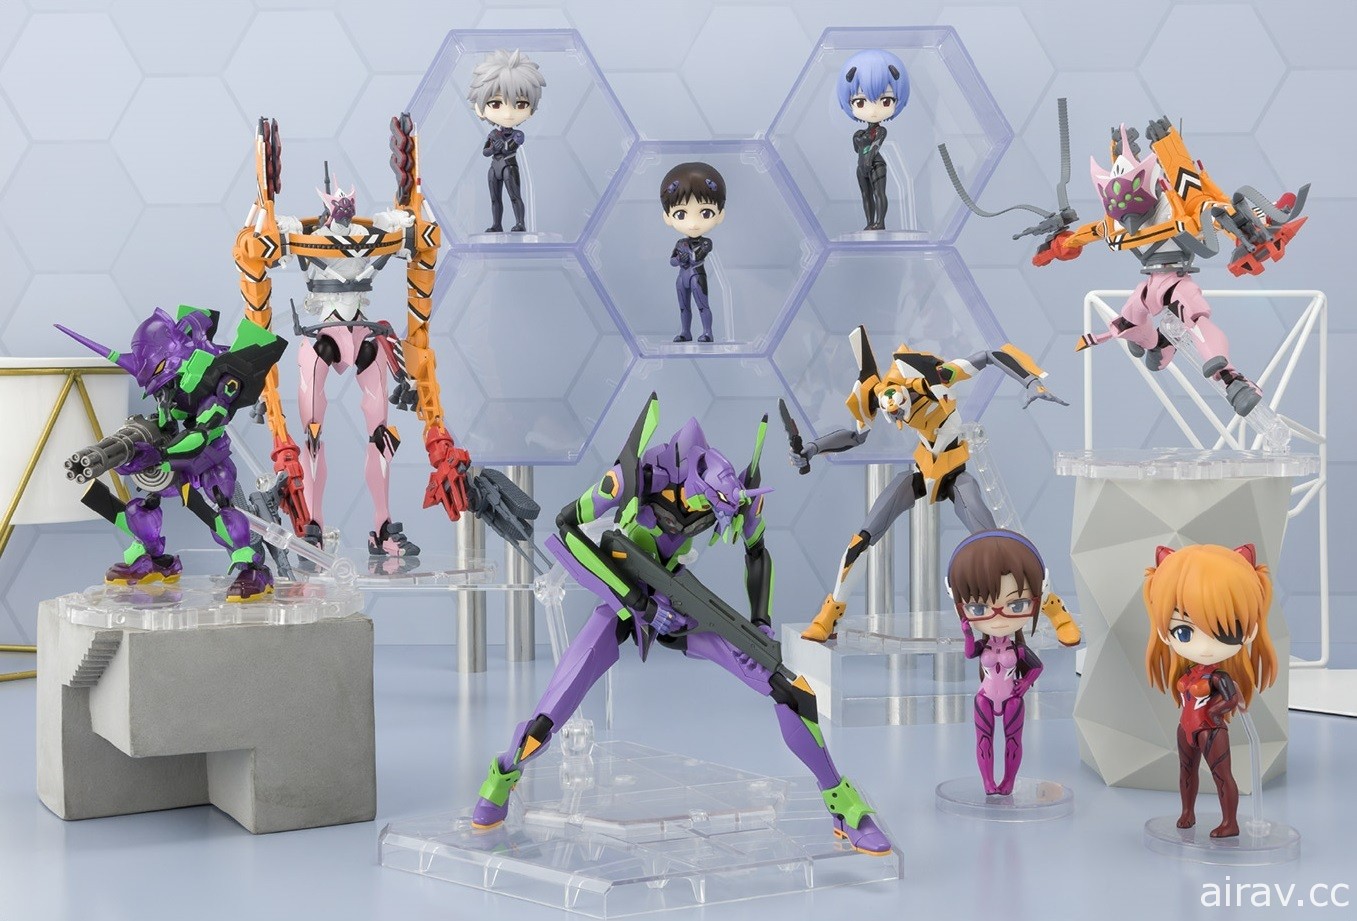 TAMASHII Features 2020 万代收藏玩具展本周开展 现场将推出多样新品展示